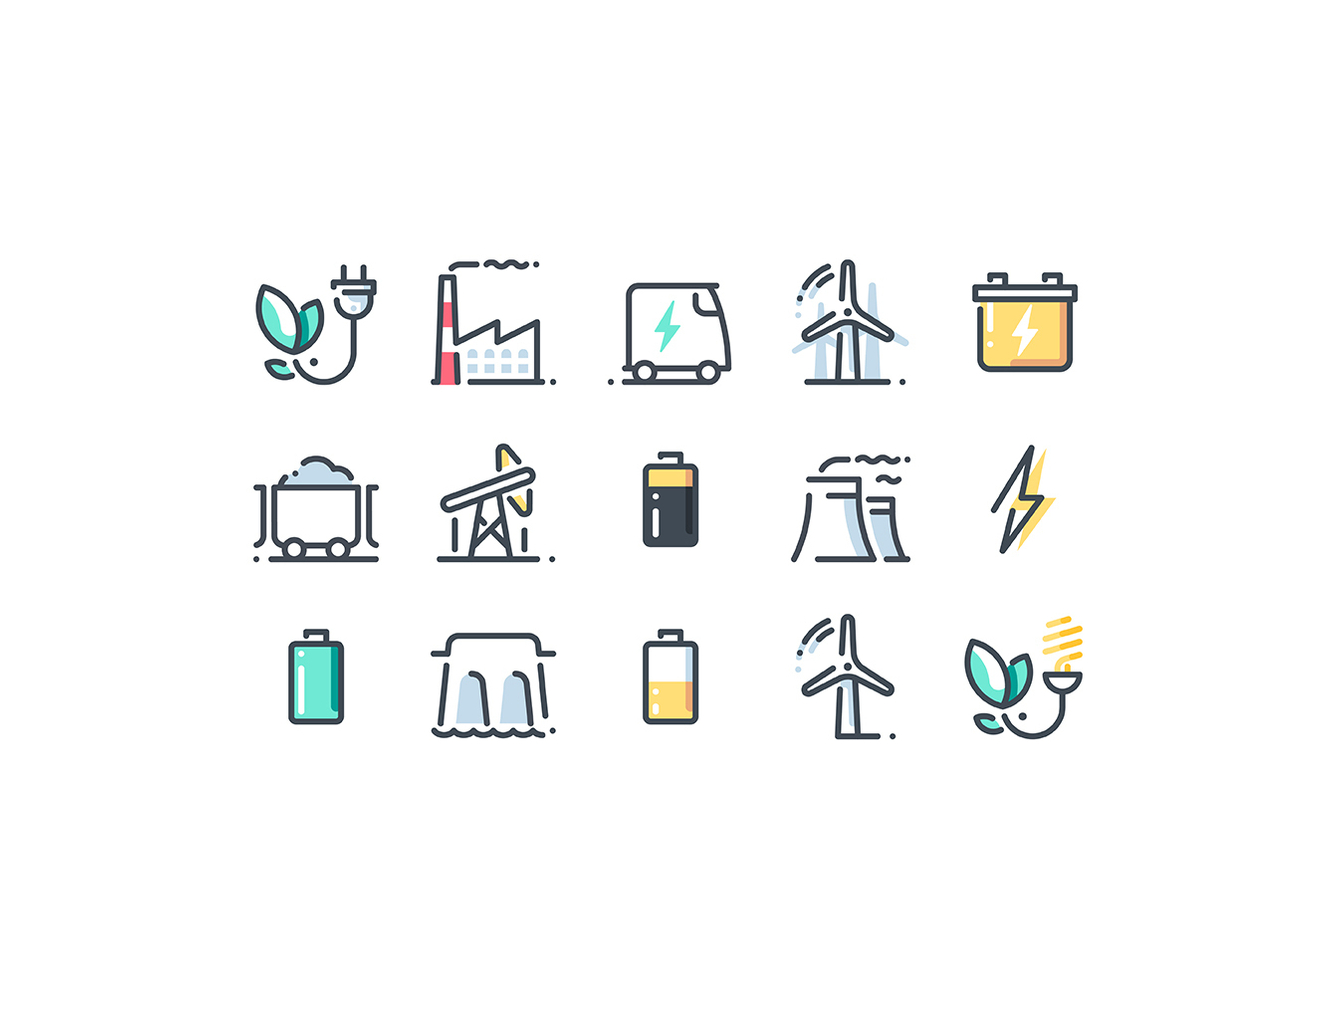 28个能源主题的矢量线条图标 28 Vector Energy Icons插图4